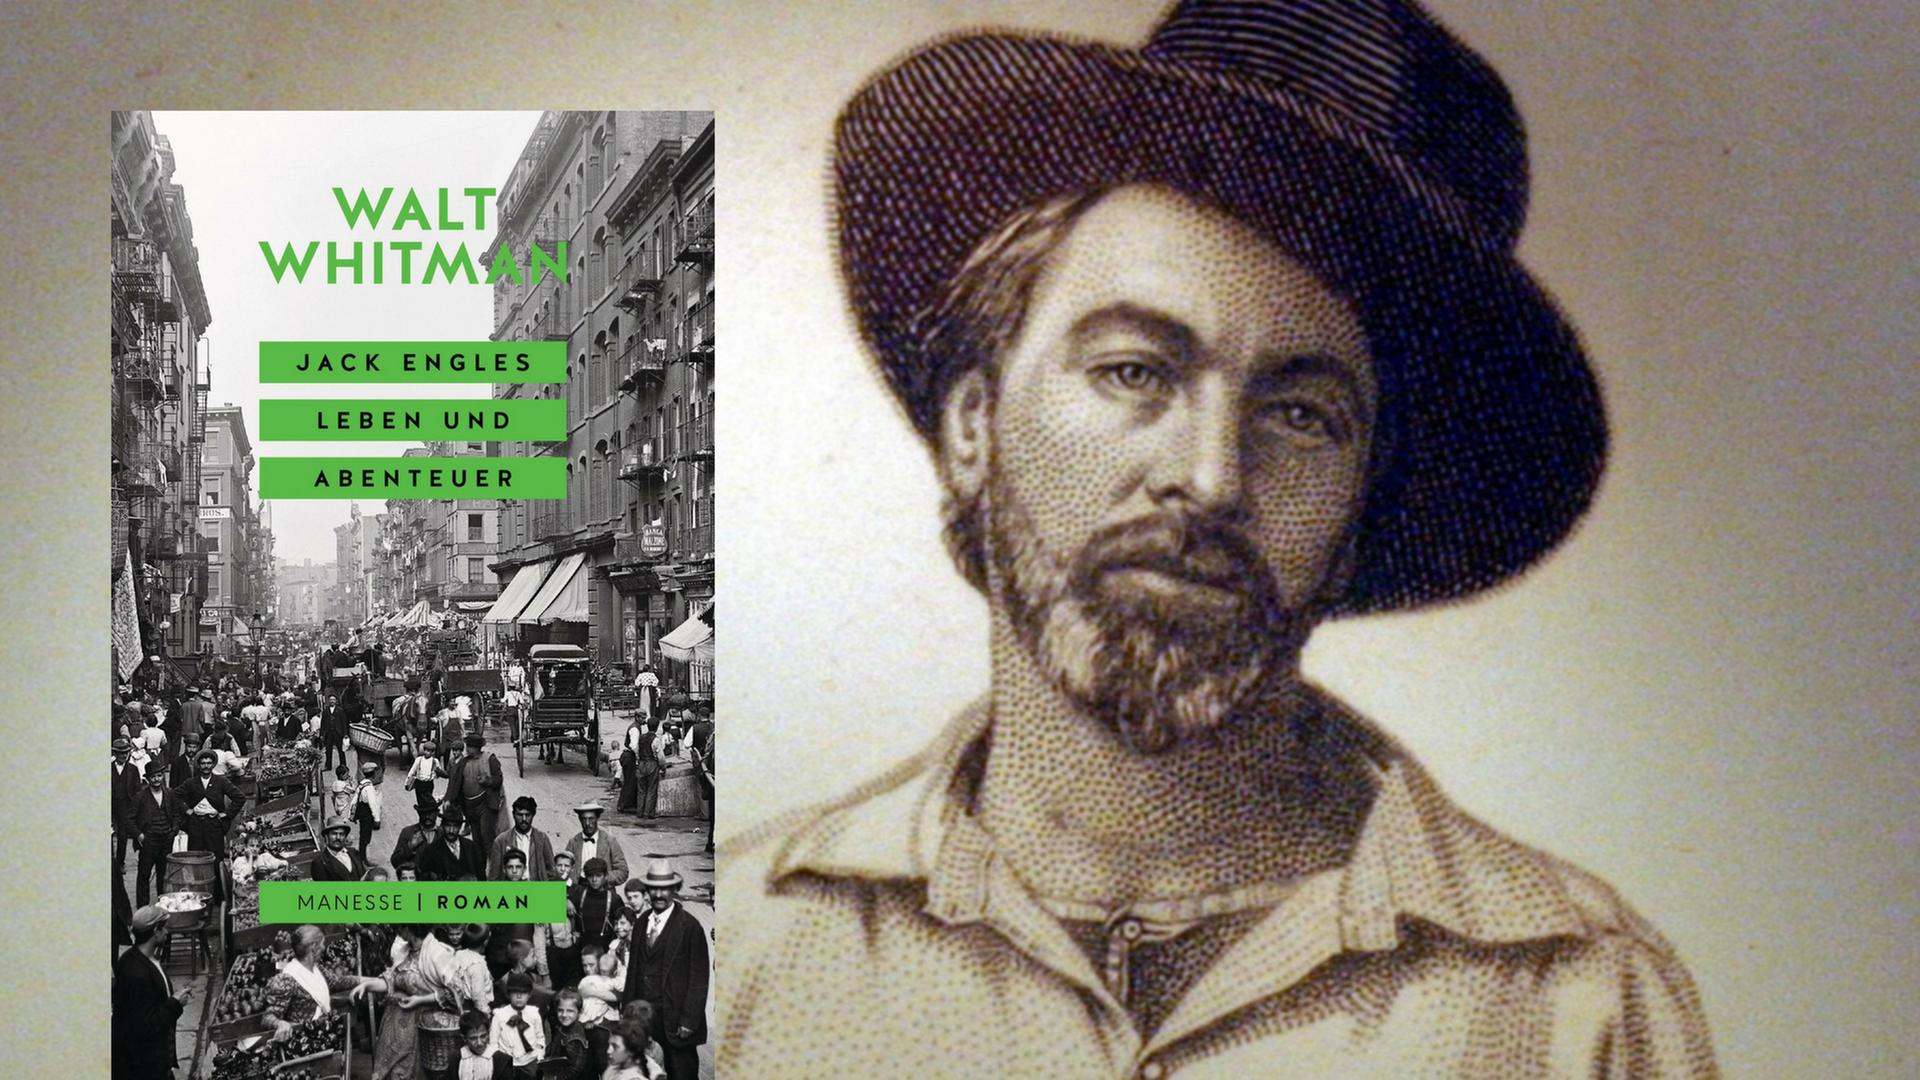 Cover Walt Whitman "Jack Engles Leben und Abenteuer", im Hintergrund der Autor selbst